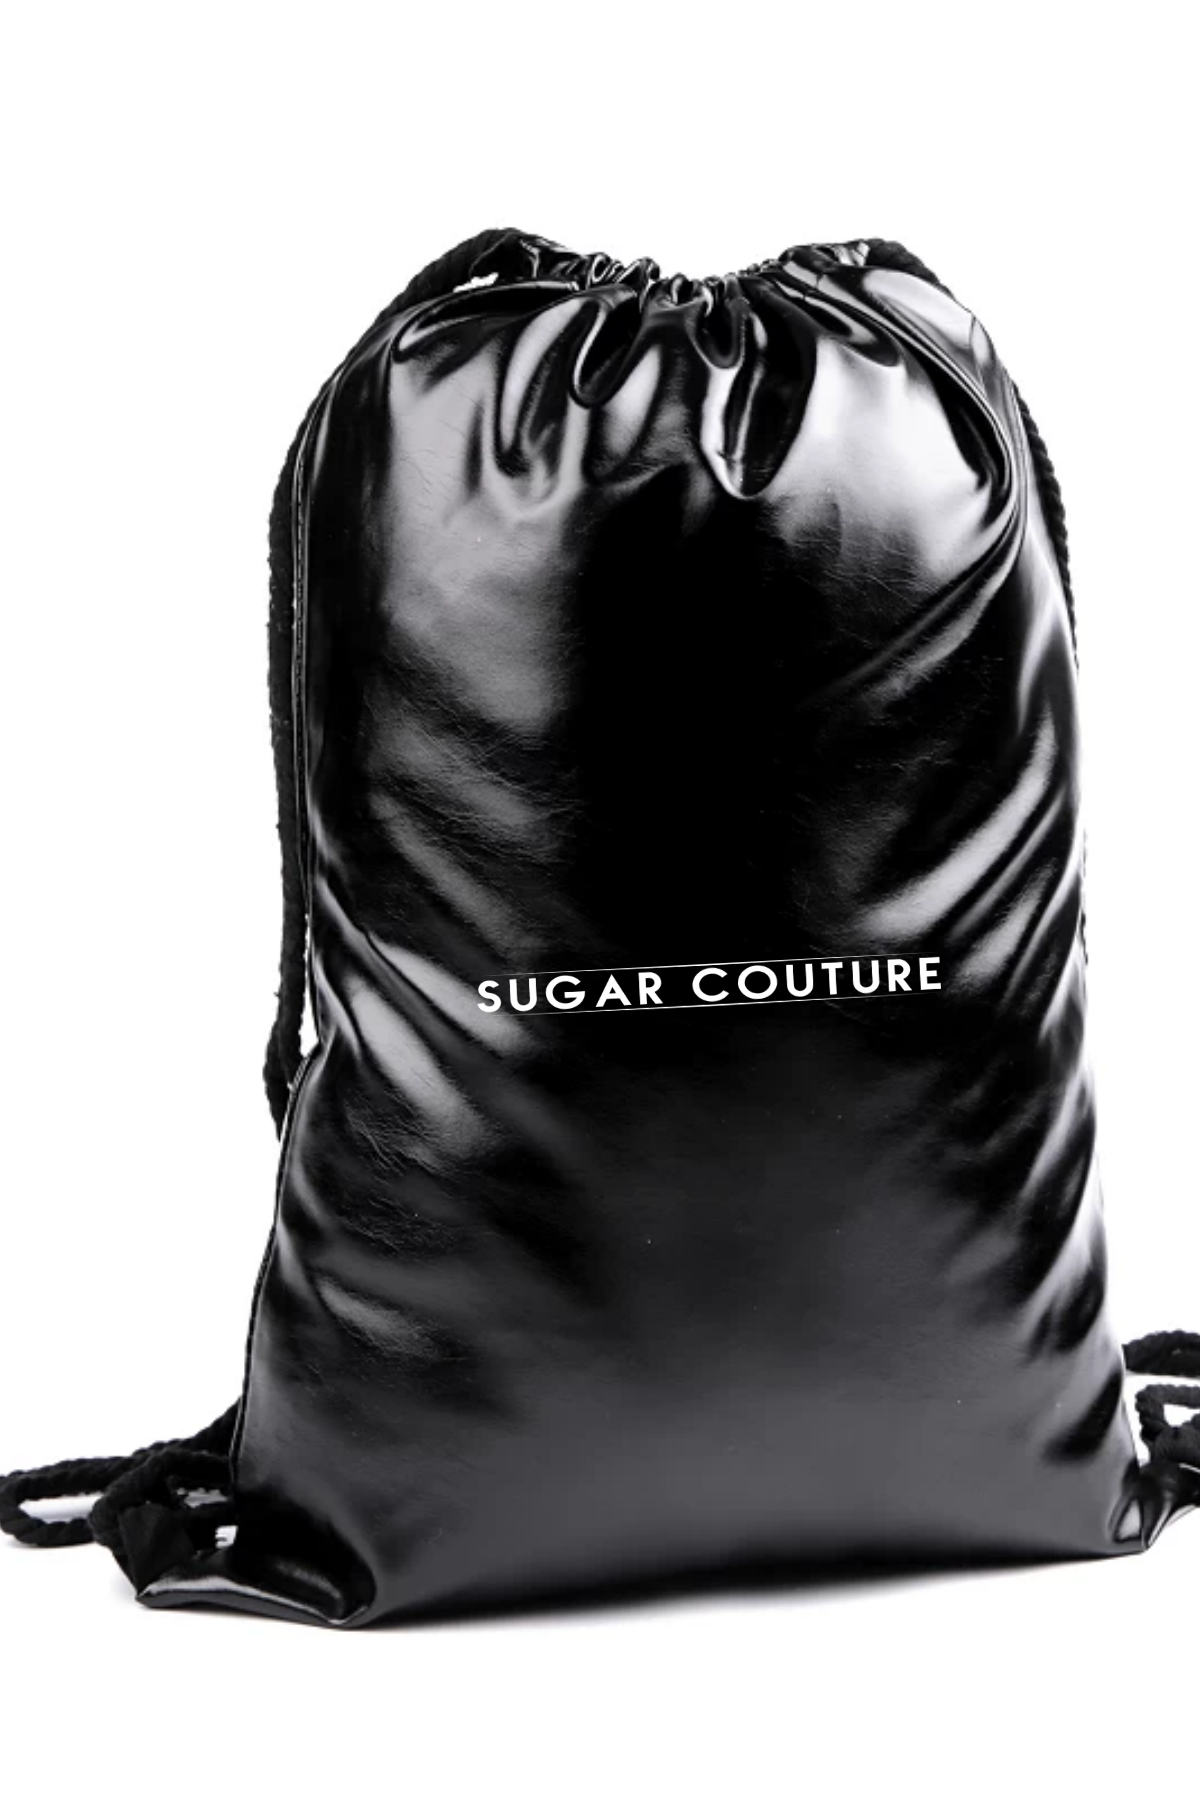 Rucsac negru metalic sport cu snur Sugar Couture